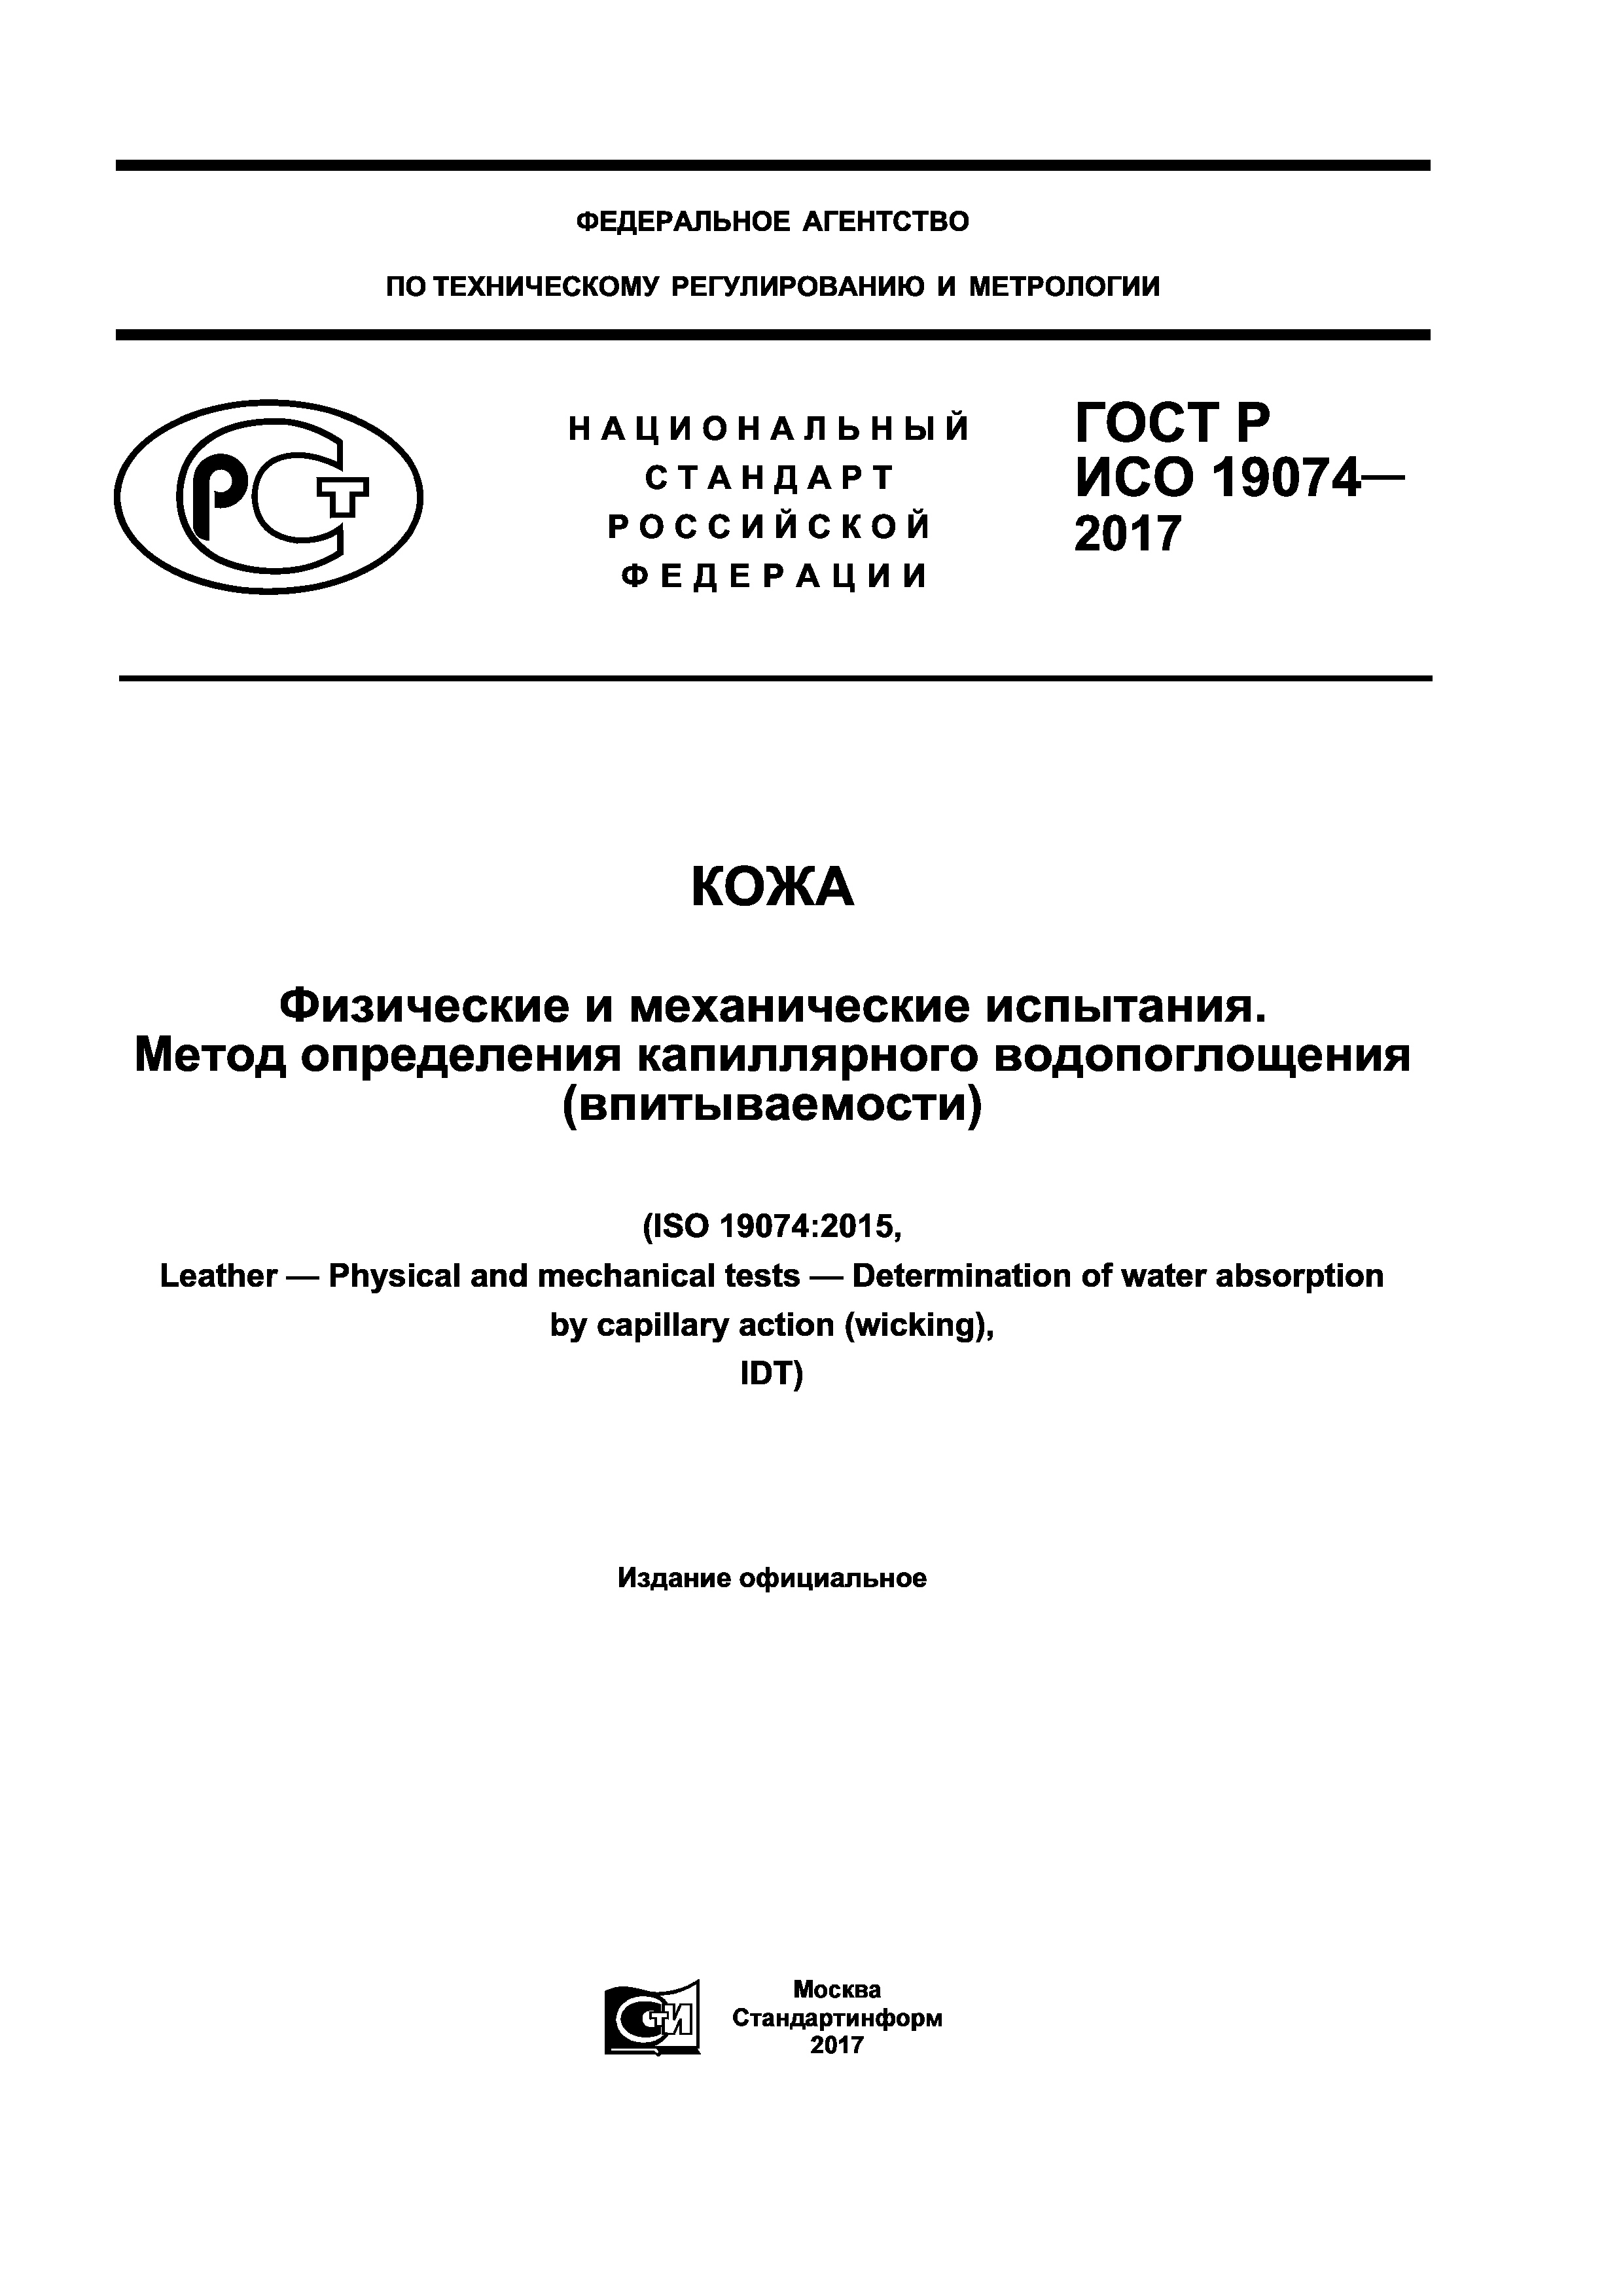 ГОСТ Р ИСО 19074-2017